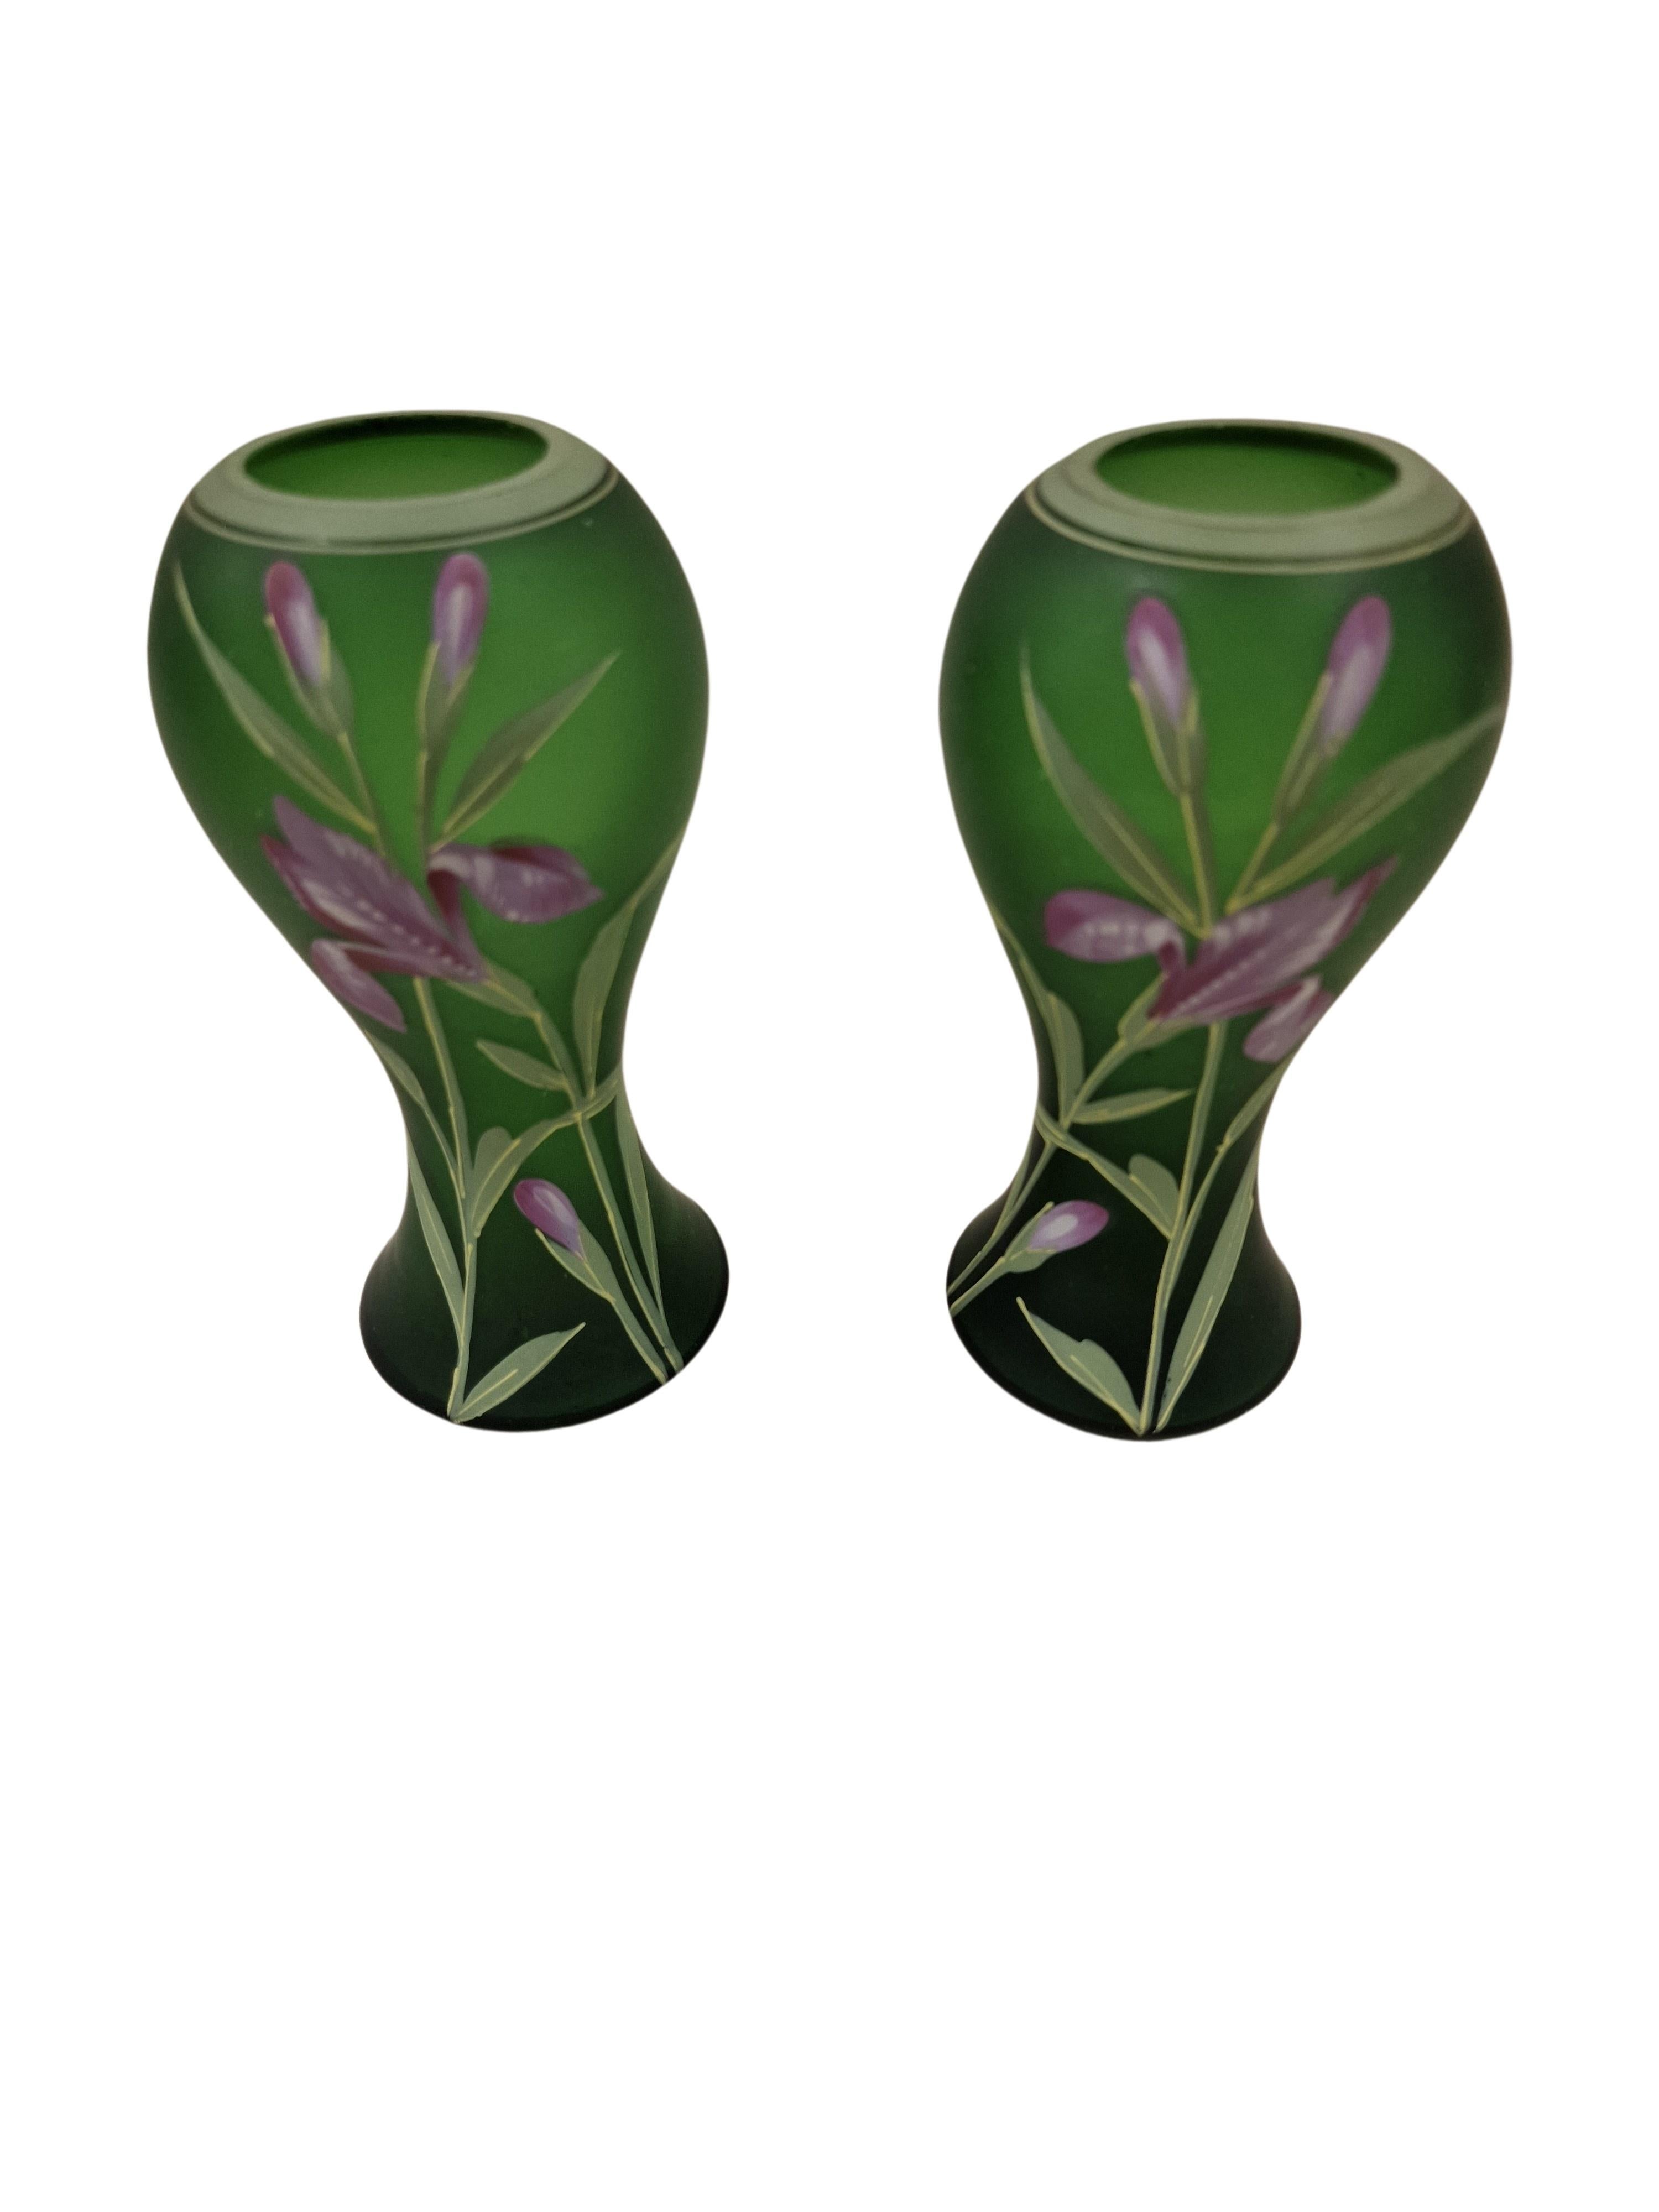 French Pair of Flower Vases, Hand Painted, Art Nouveau/Jugendstil, Legras, 1910, France